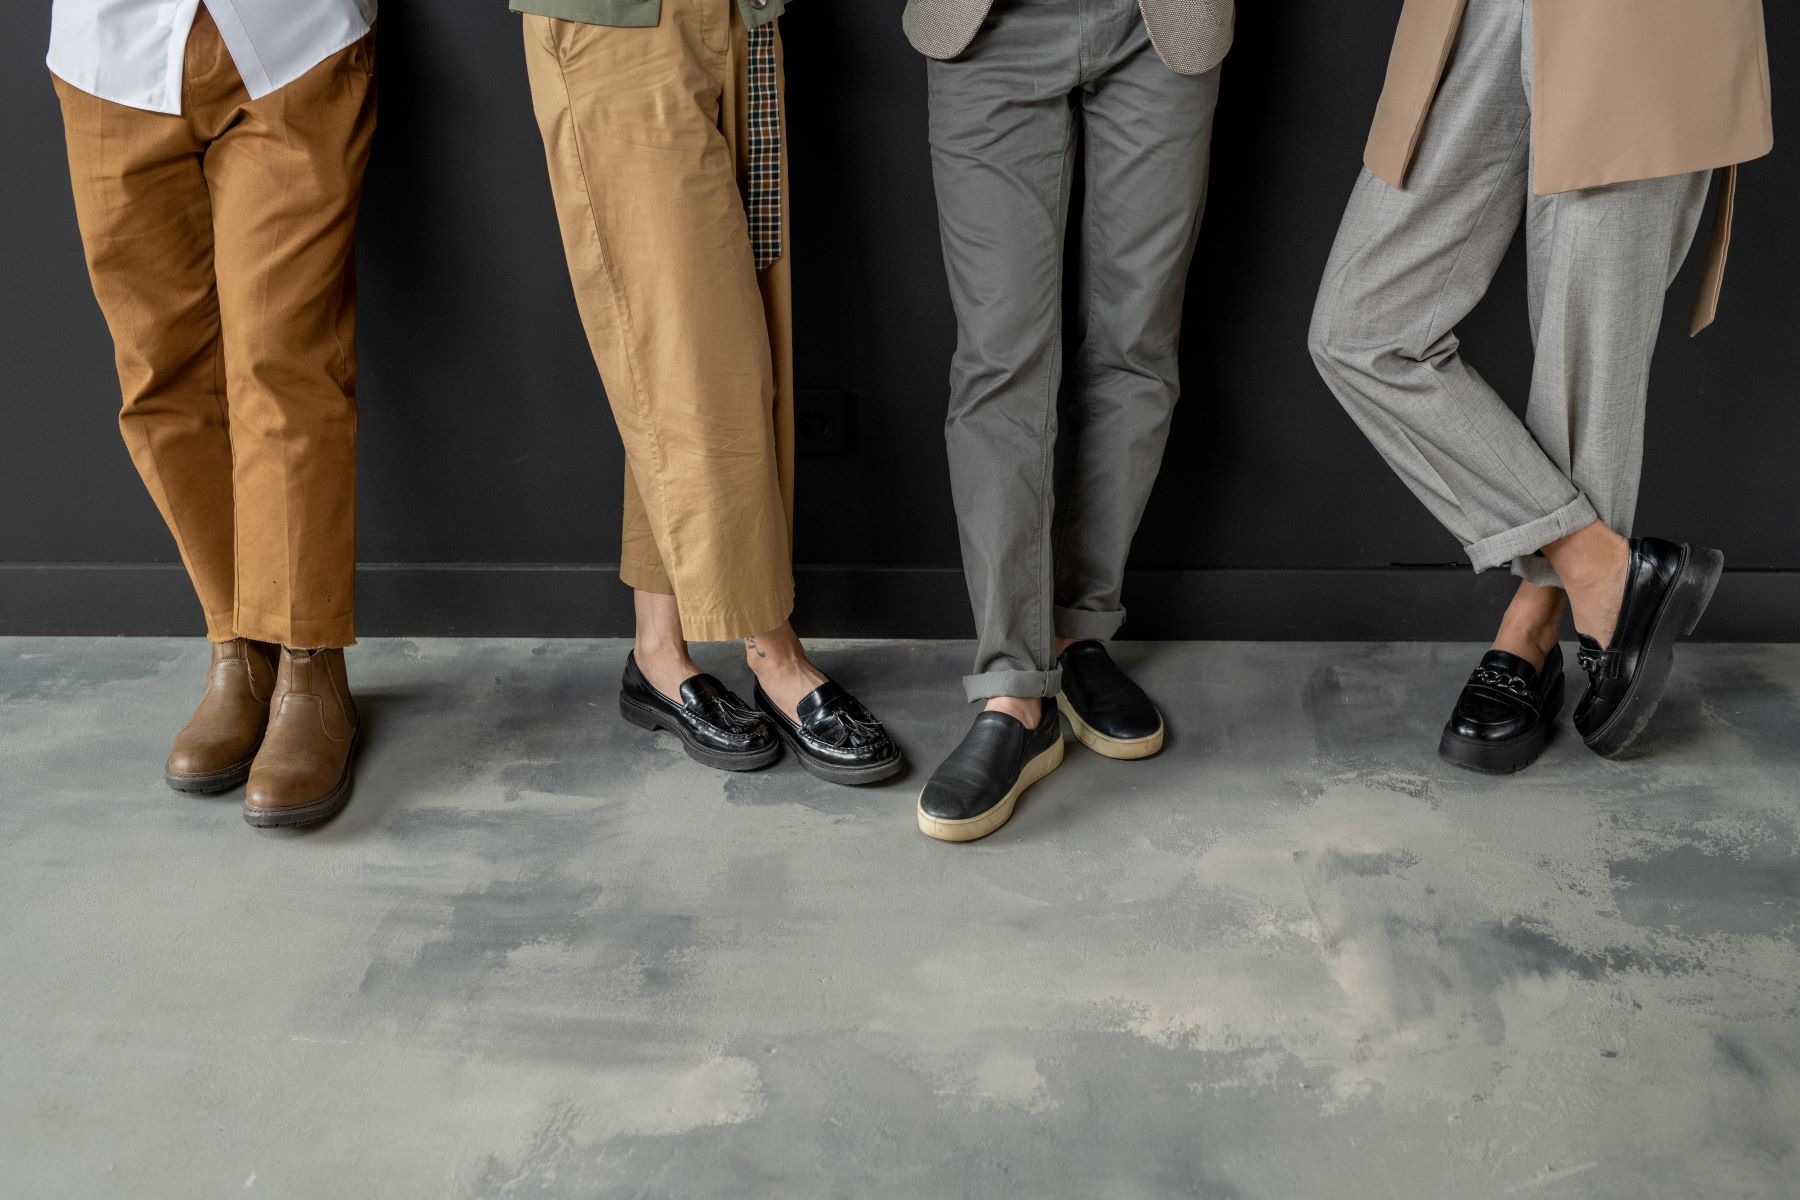 Zdjęcie nóg kilku osób w różnych eleganckich butach (advertorial)